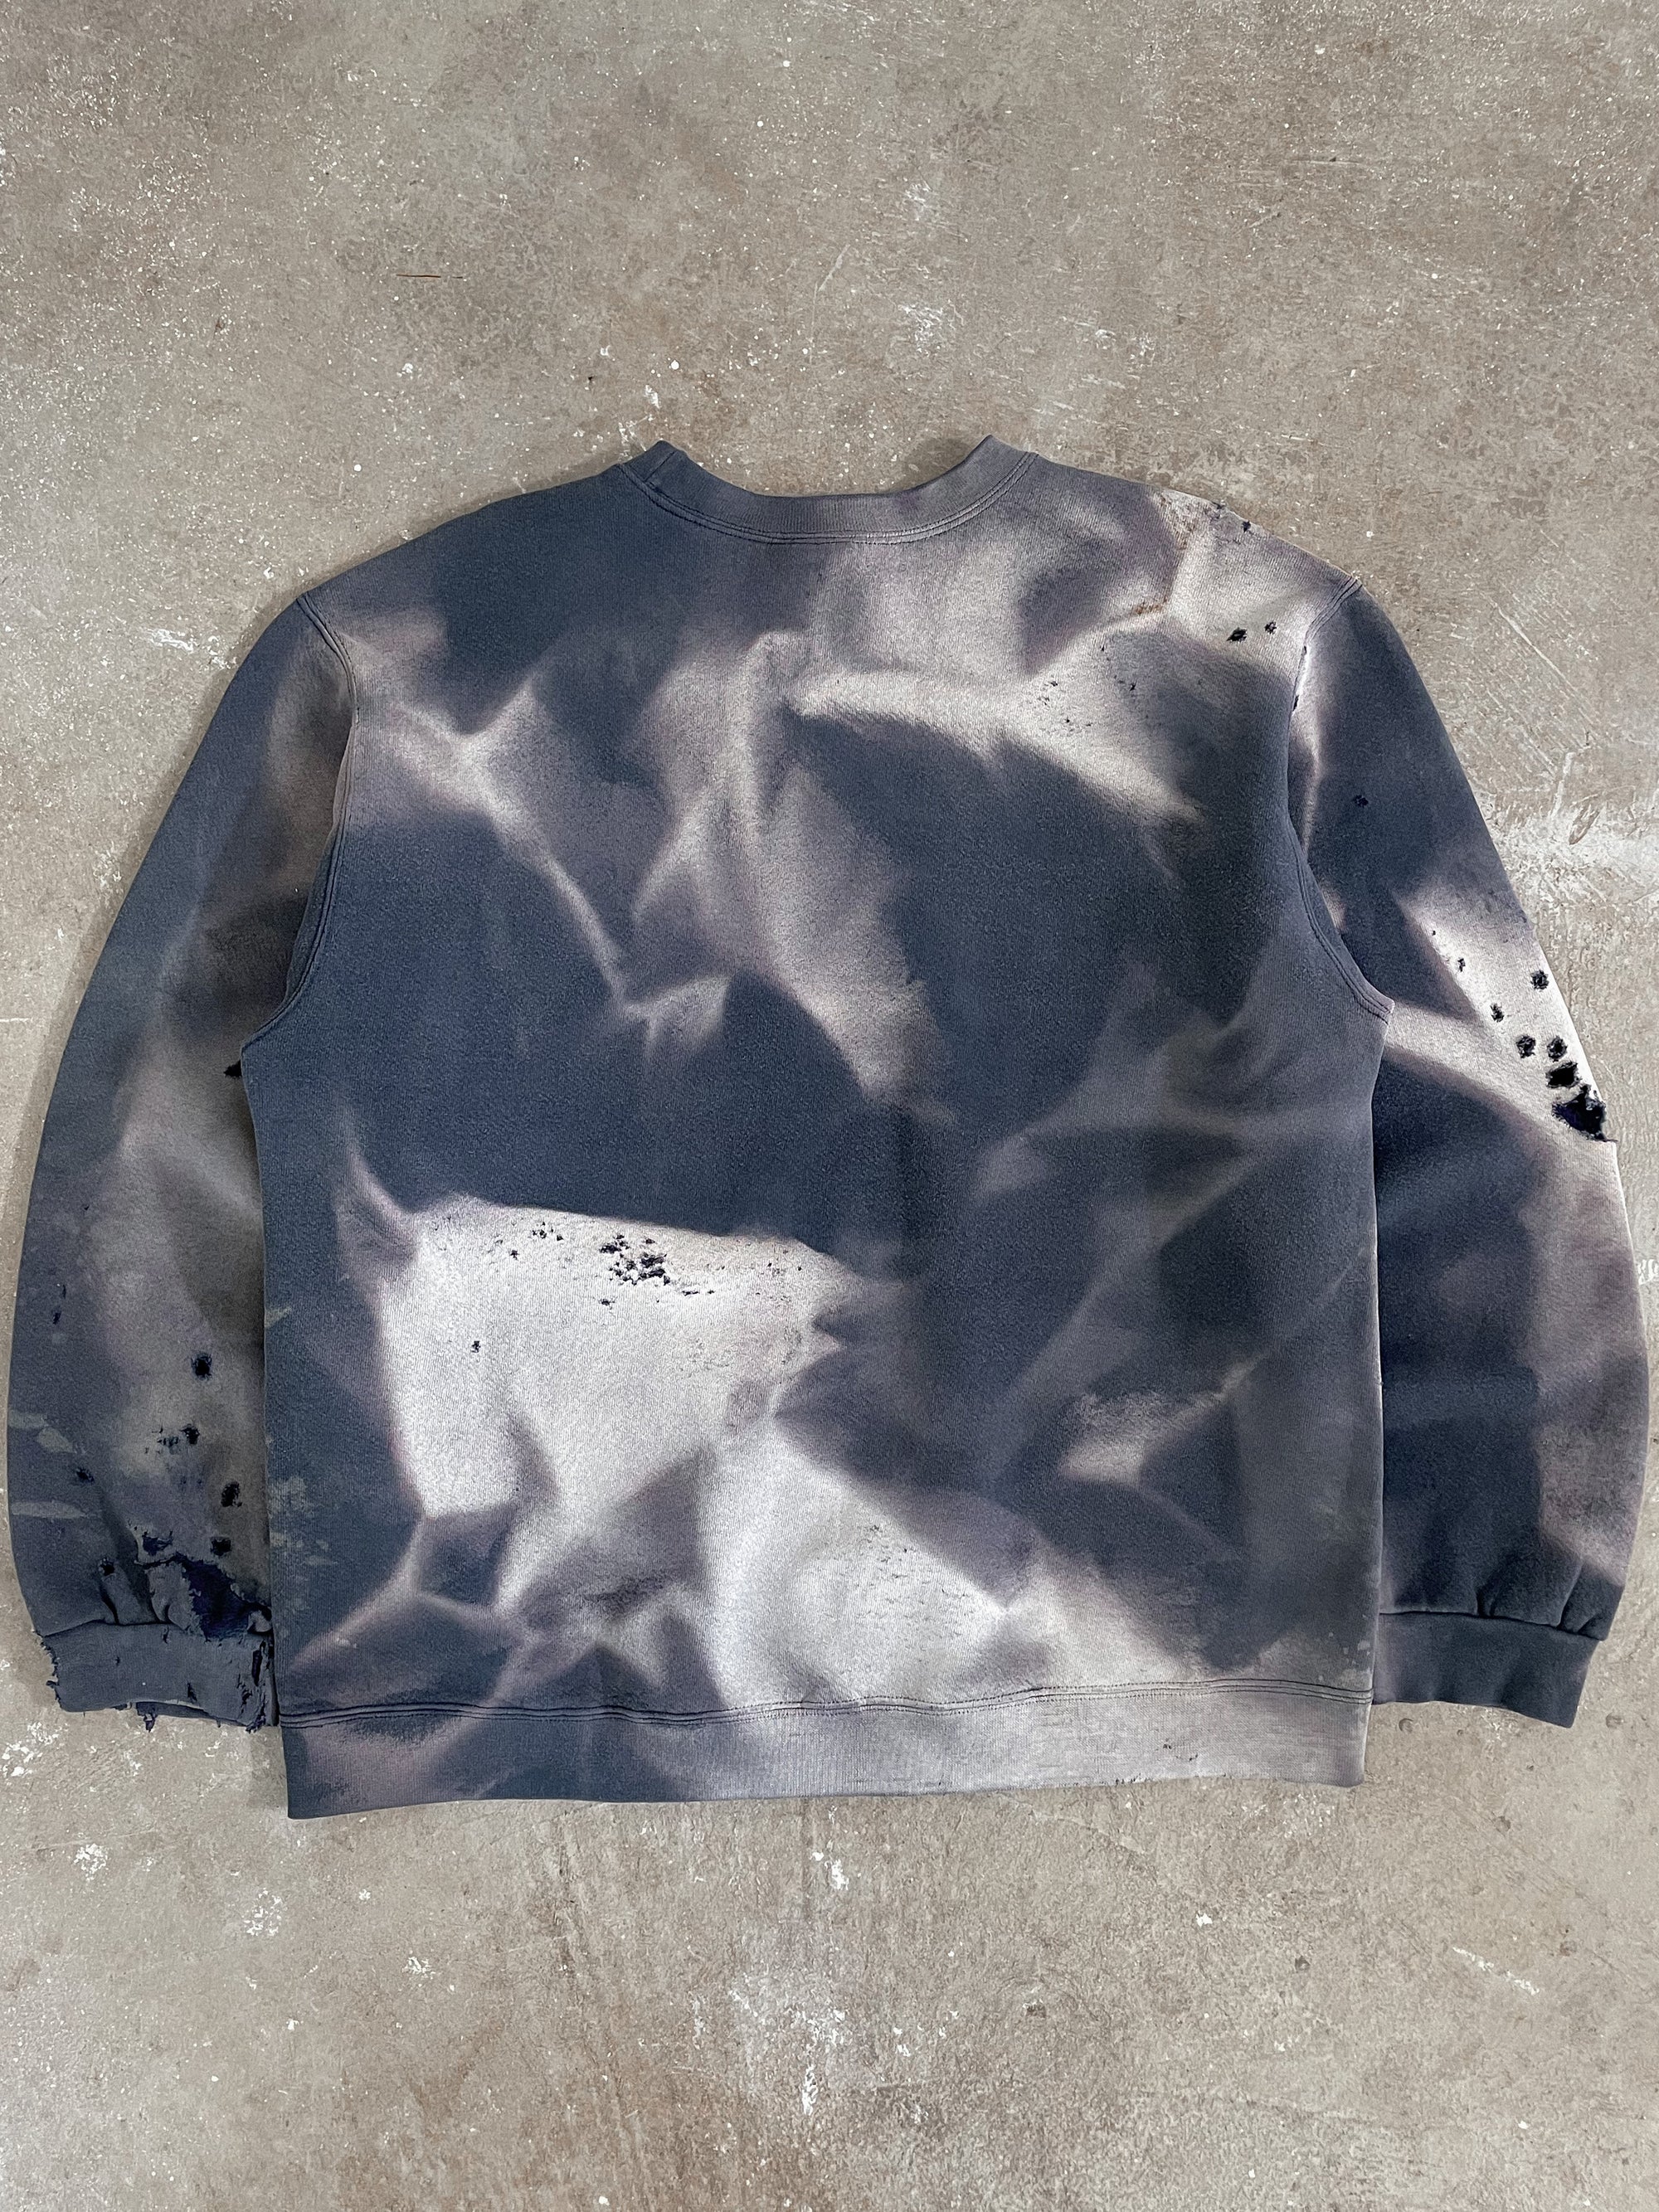 1990s Nike Sun Faded Thrashed Sweatshirt (L/XL)